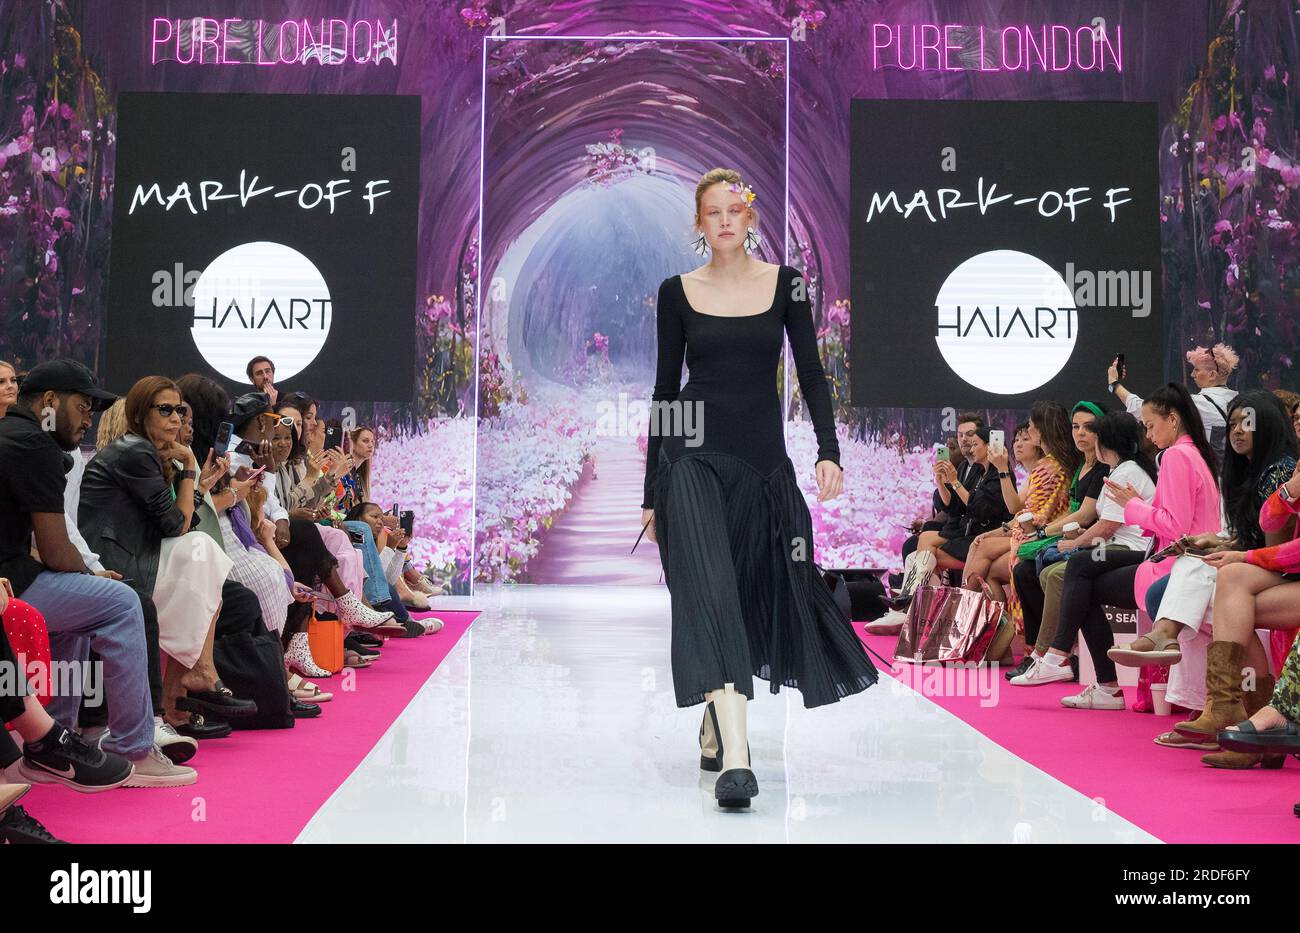 Pure London Fashion Catwalk événement/piste juillet 2023 - Kensington Olympia Londres Royaume-Uni Angleterre Banque D'Images